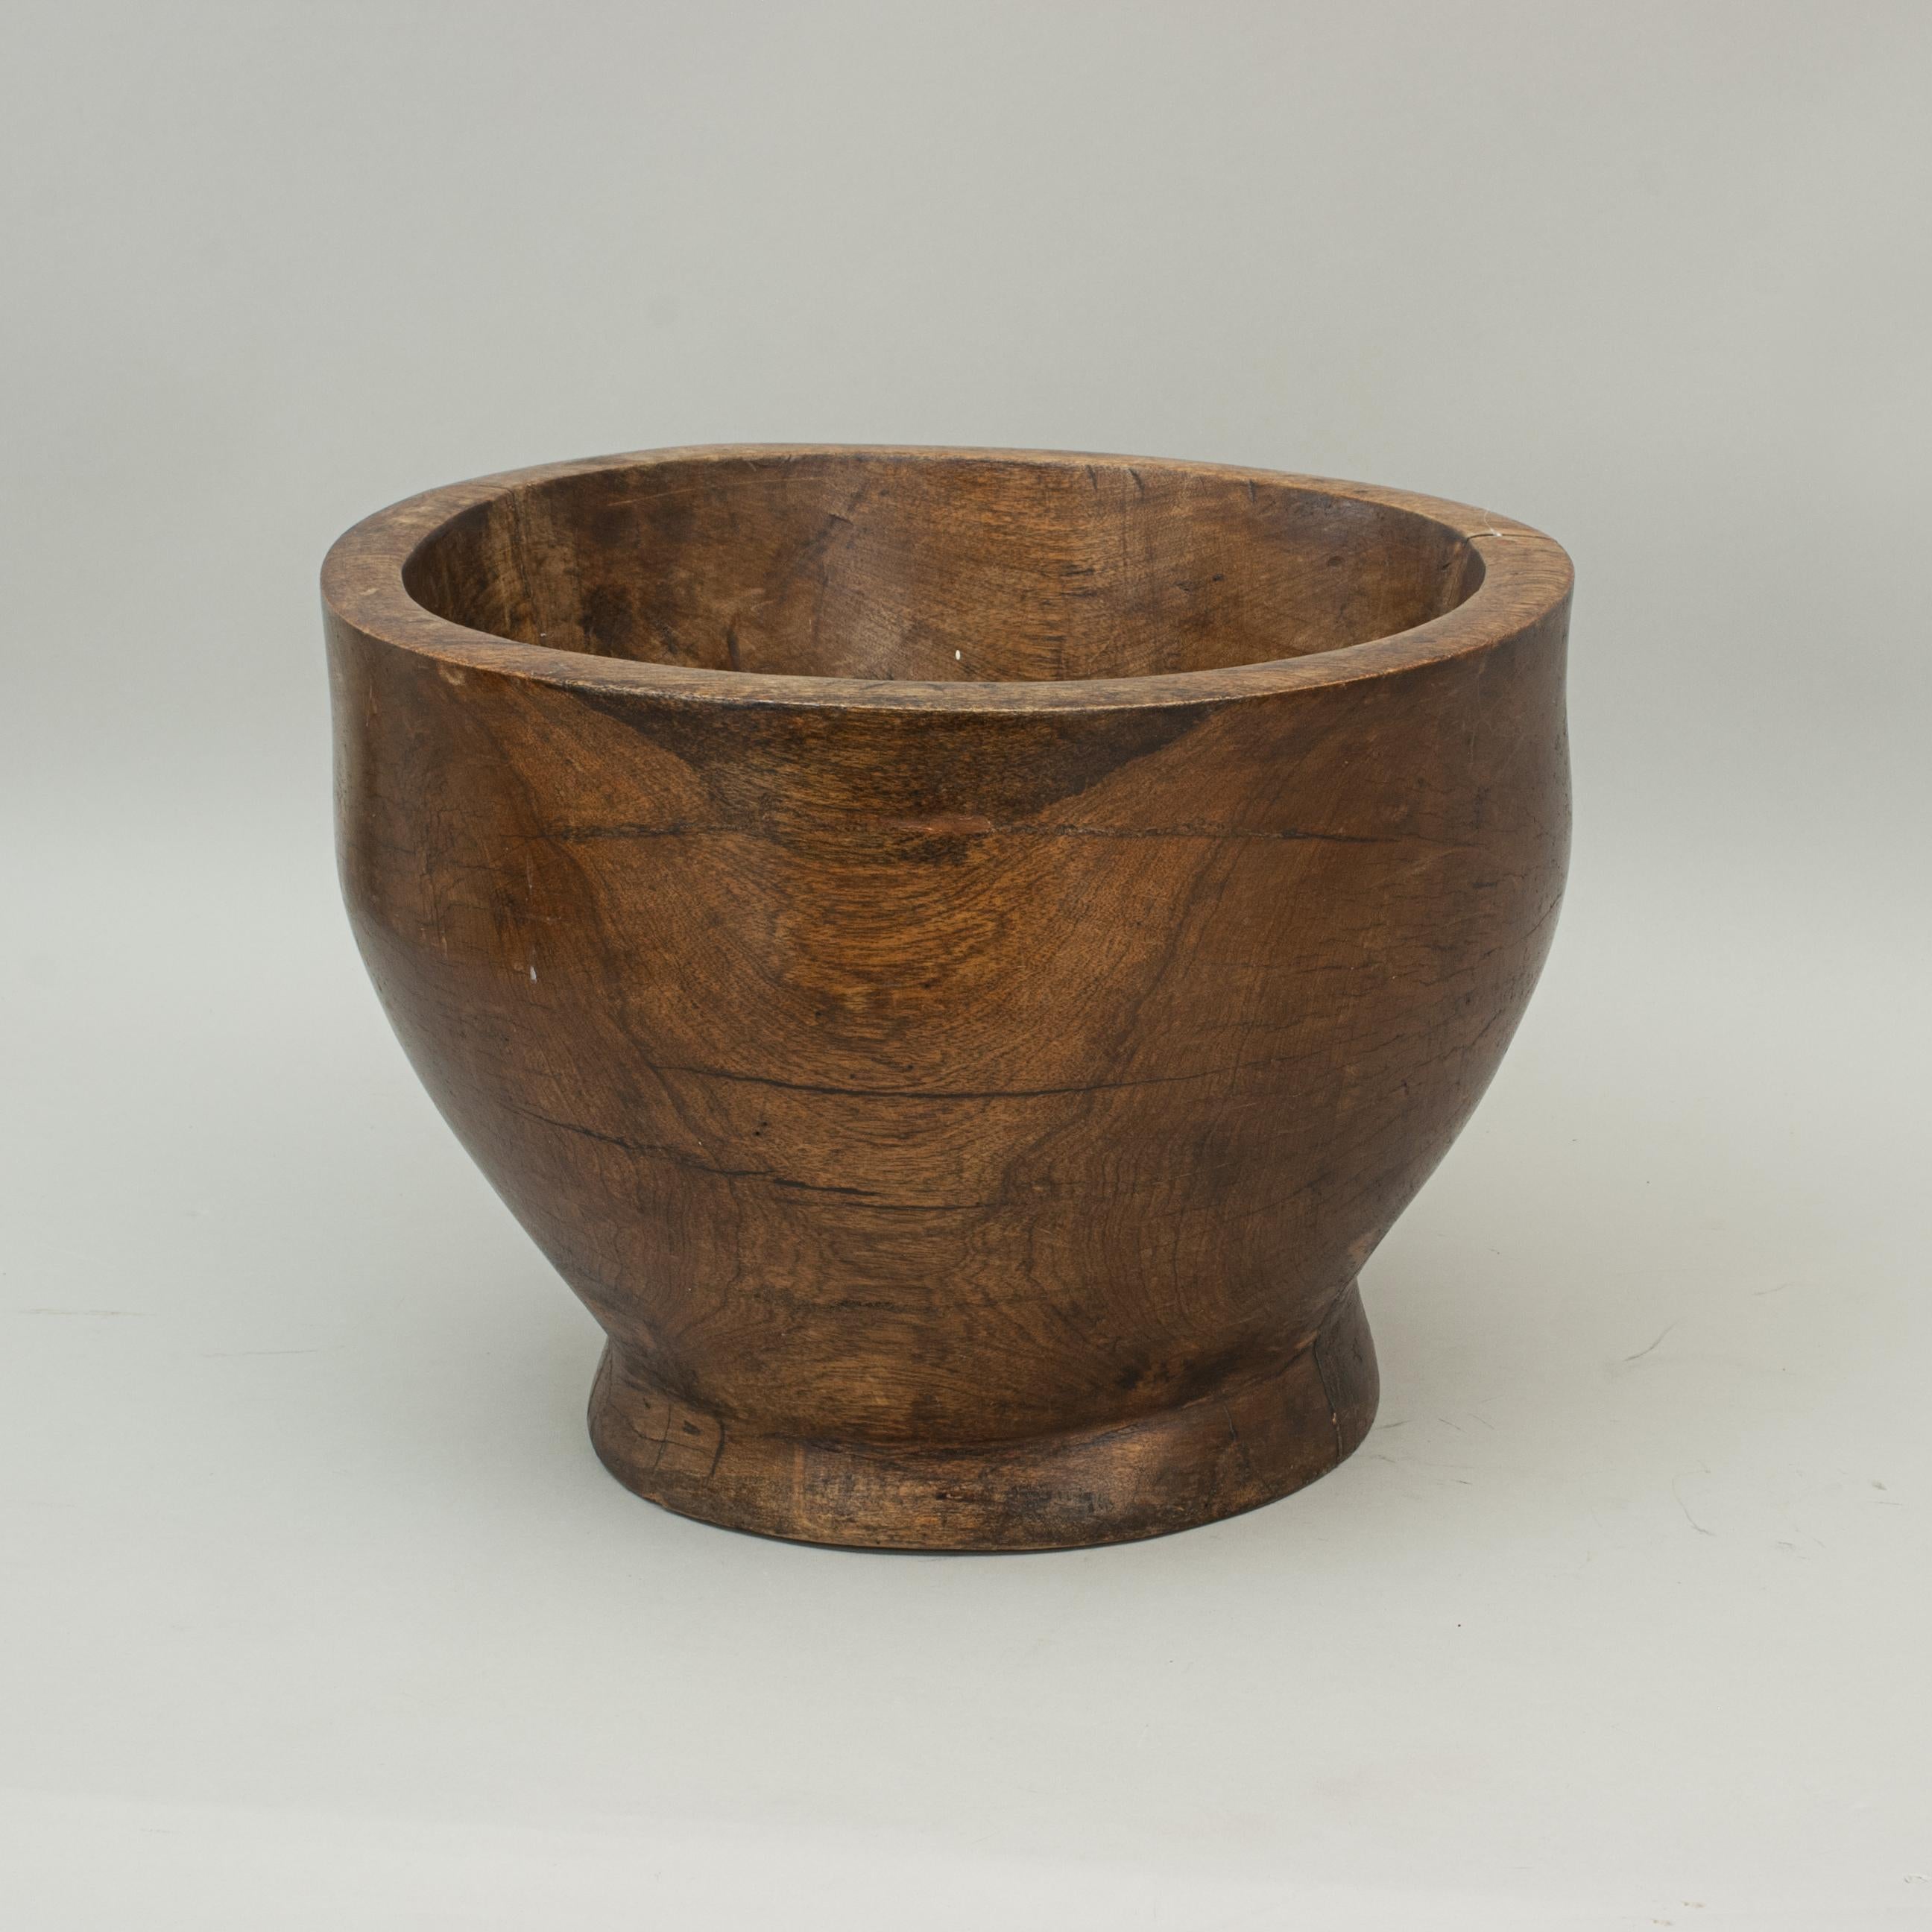 Vintage, Large Wooden Bowl in Walnut or Teak 1